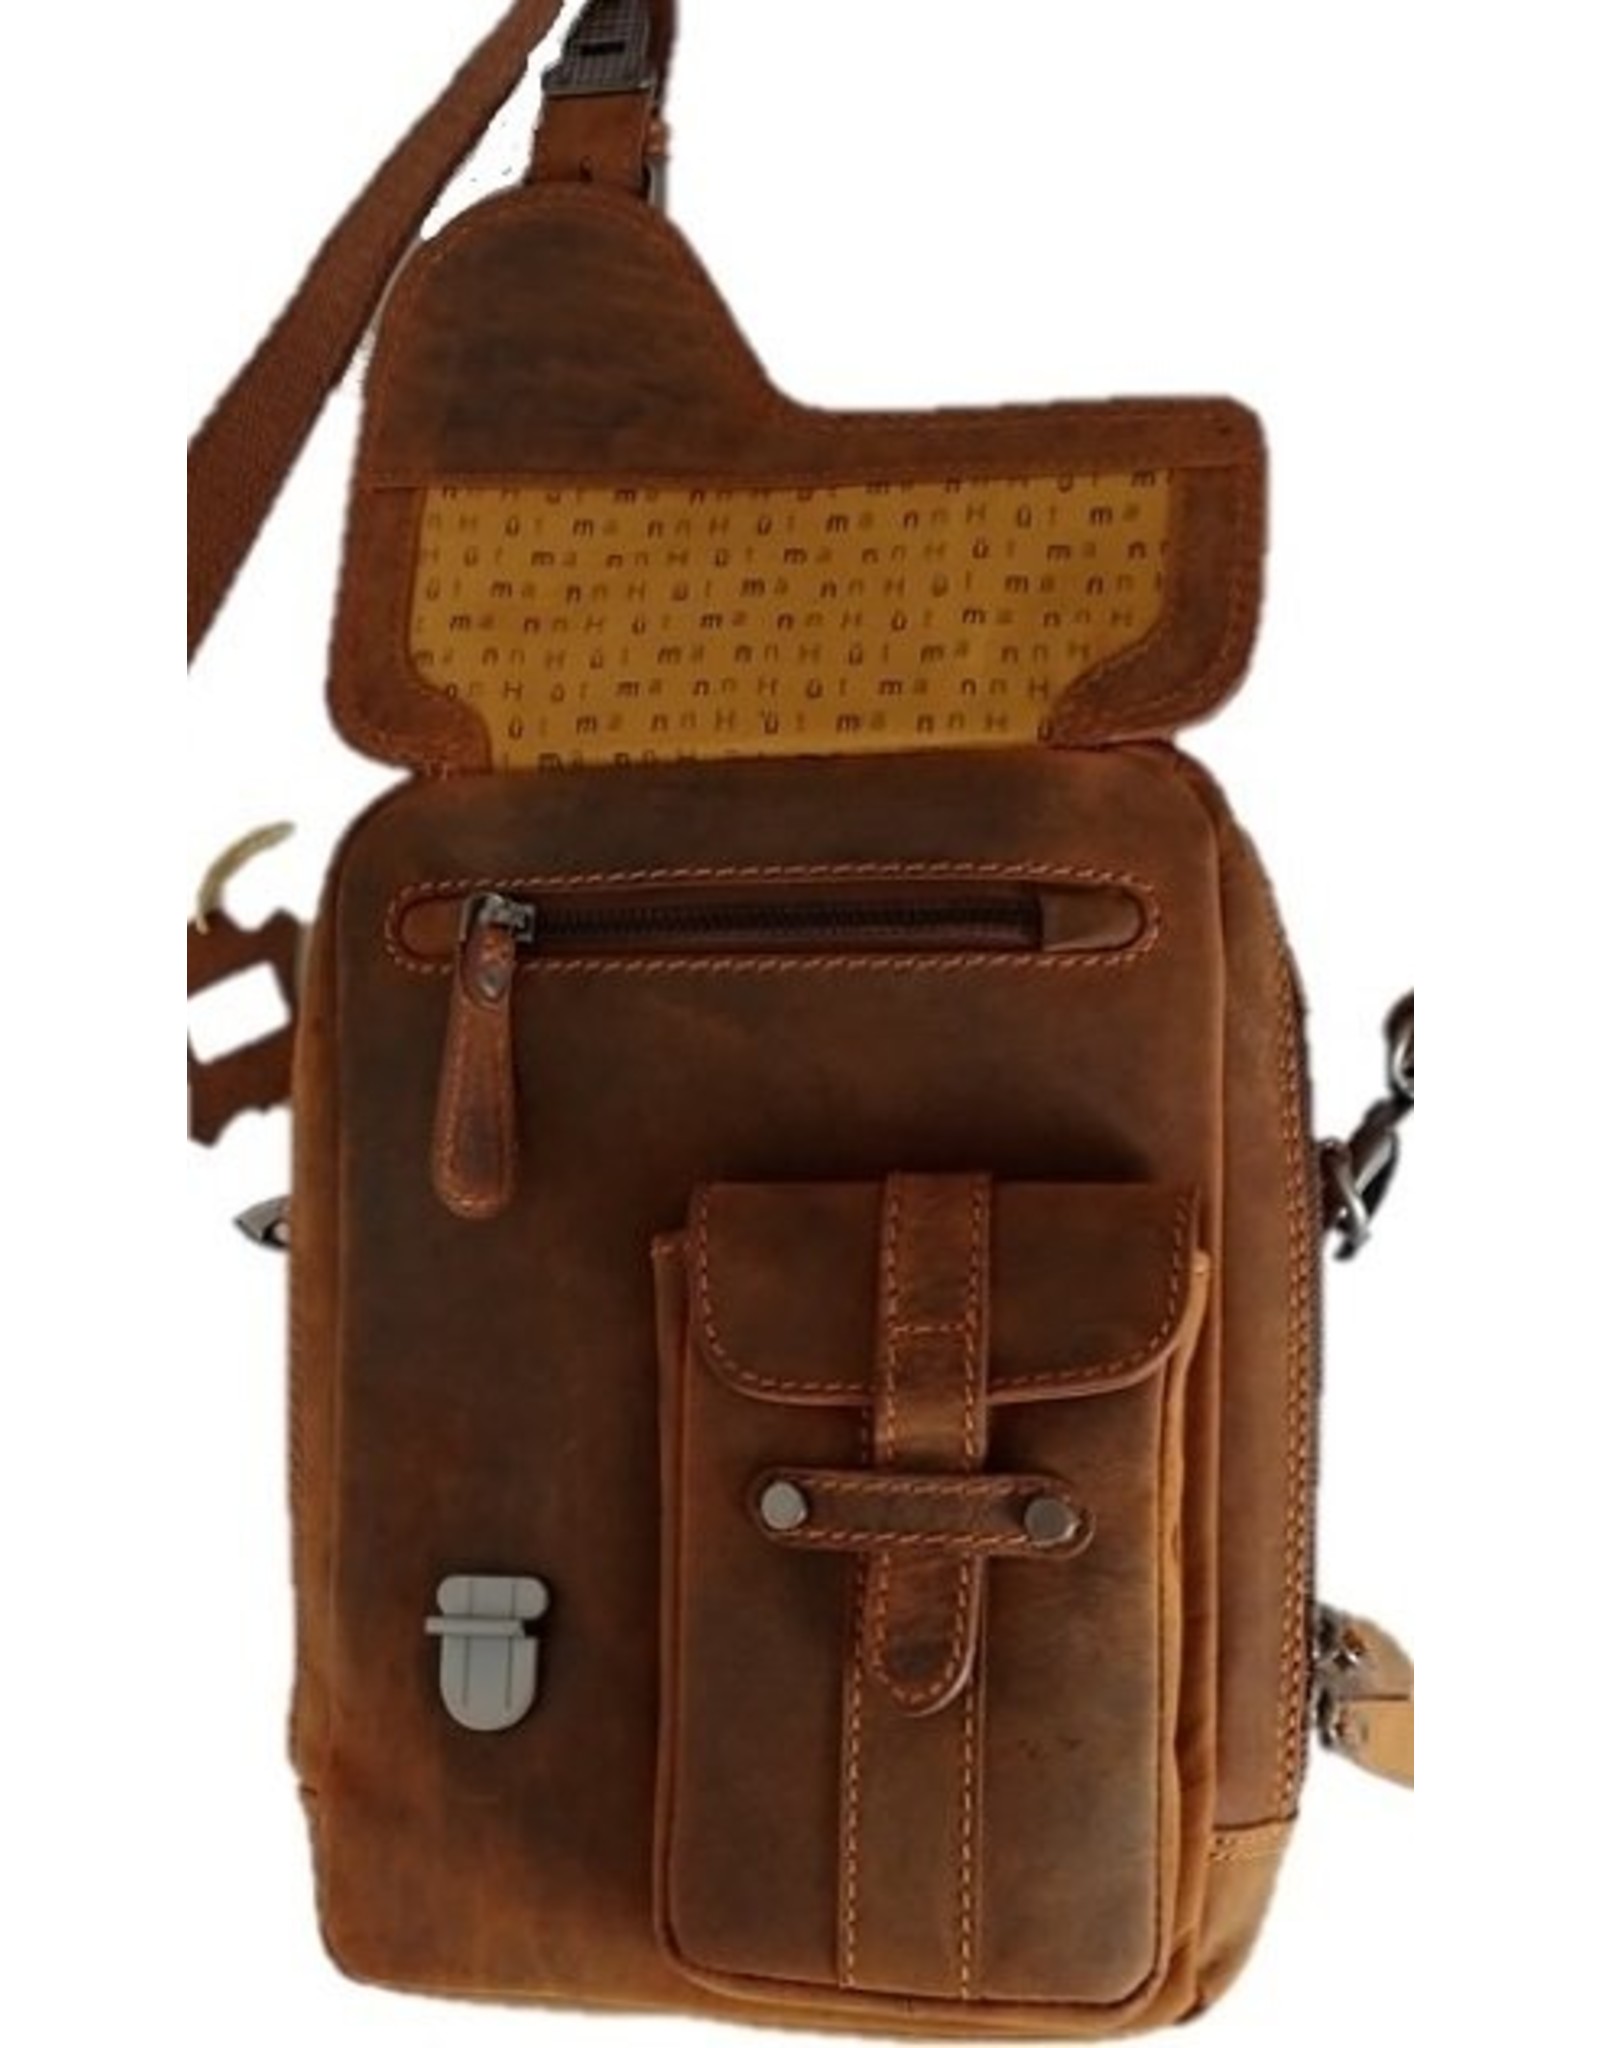 Hutmann Leather bags - Hütmann leather shoulder bag brown 3060